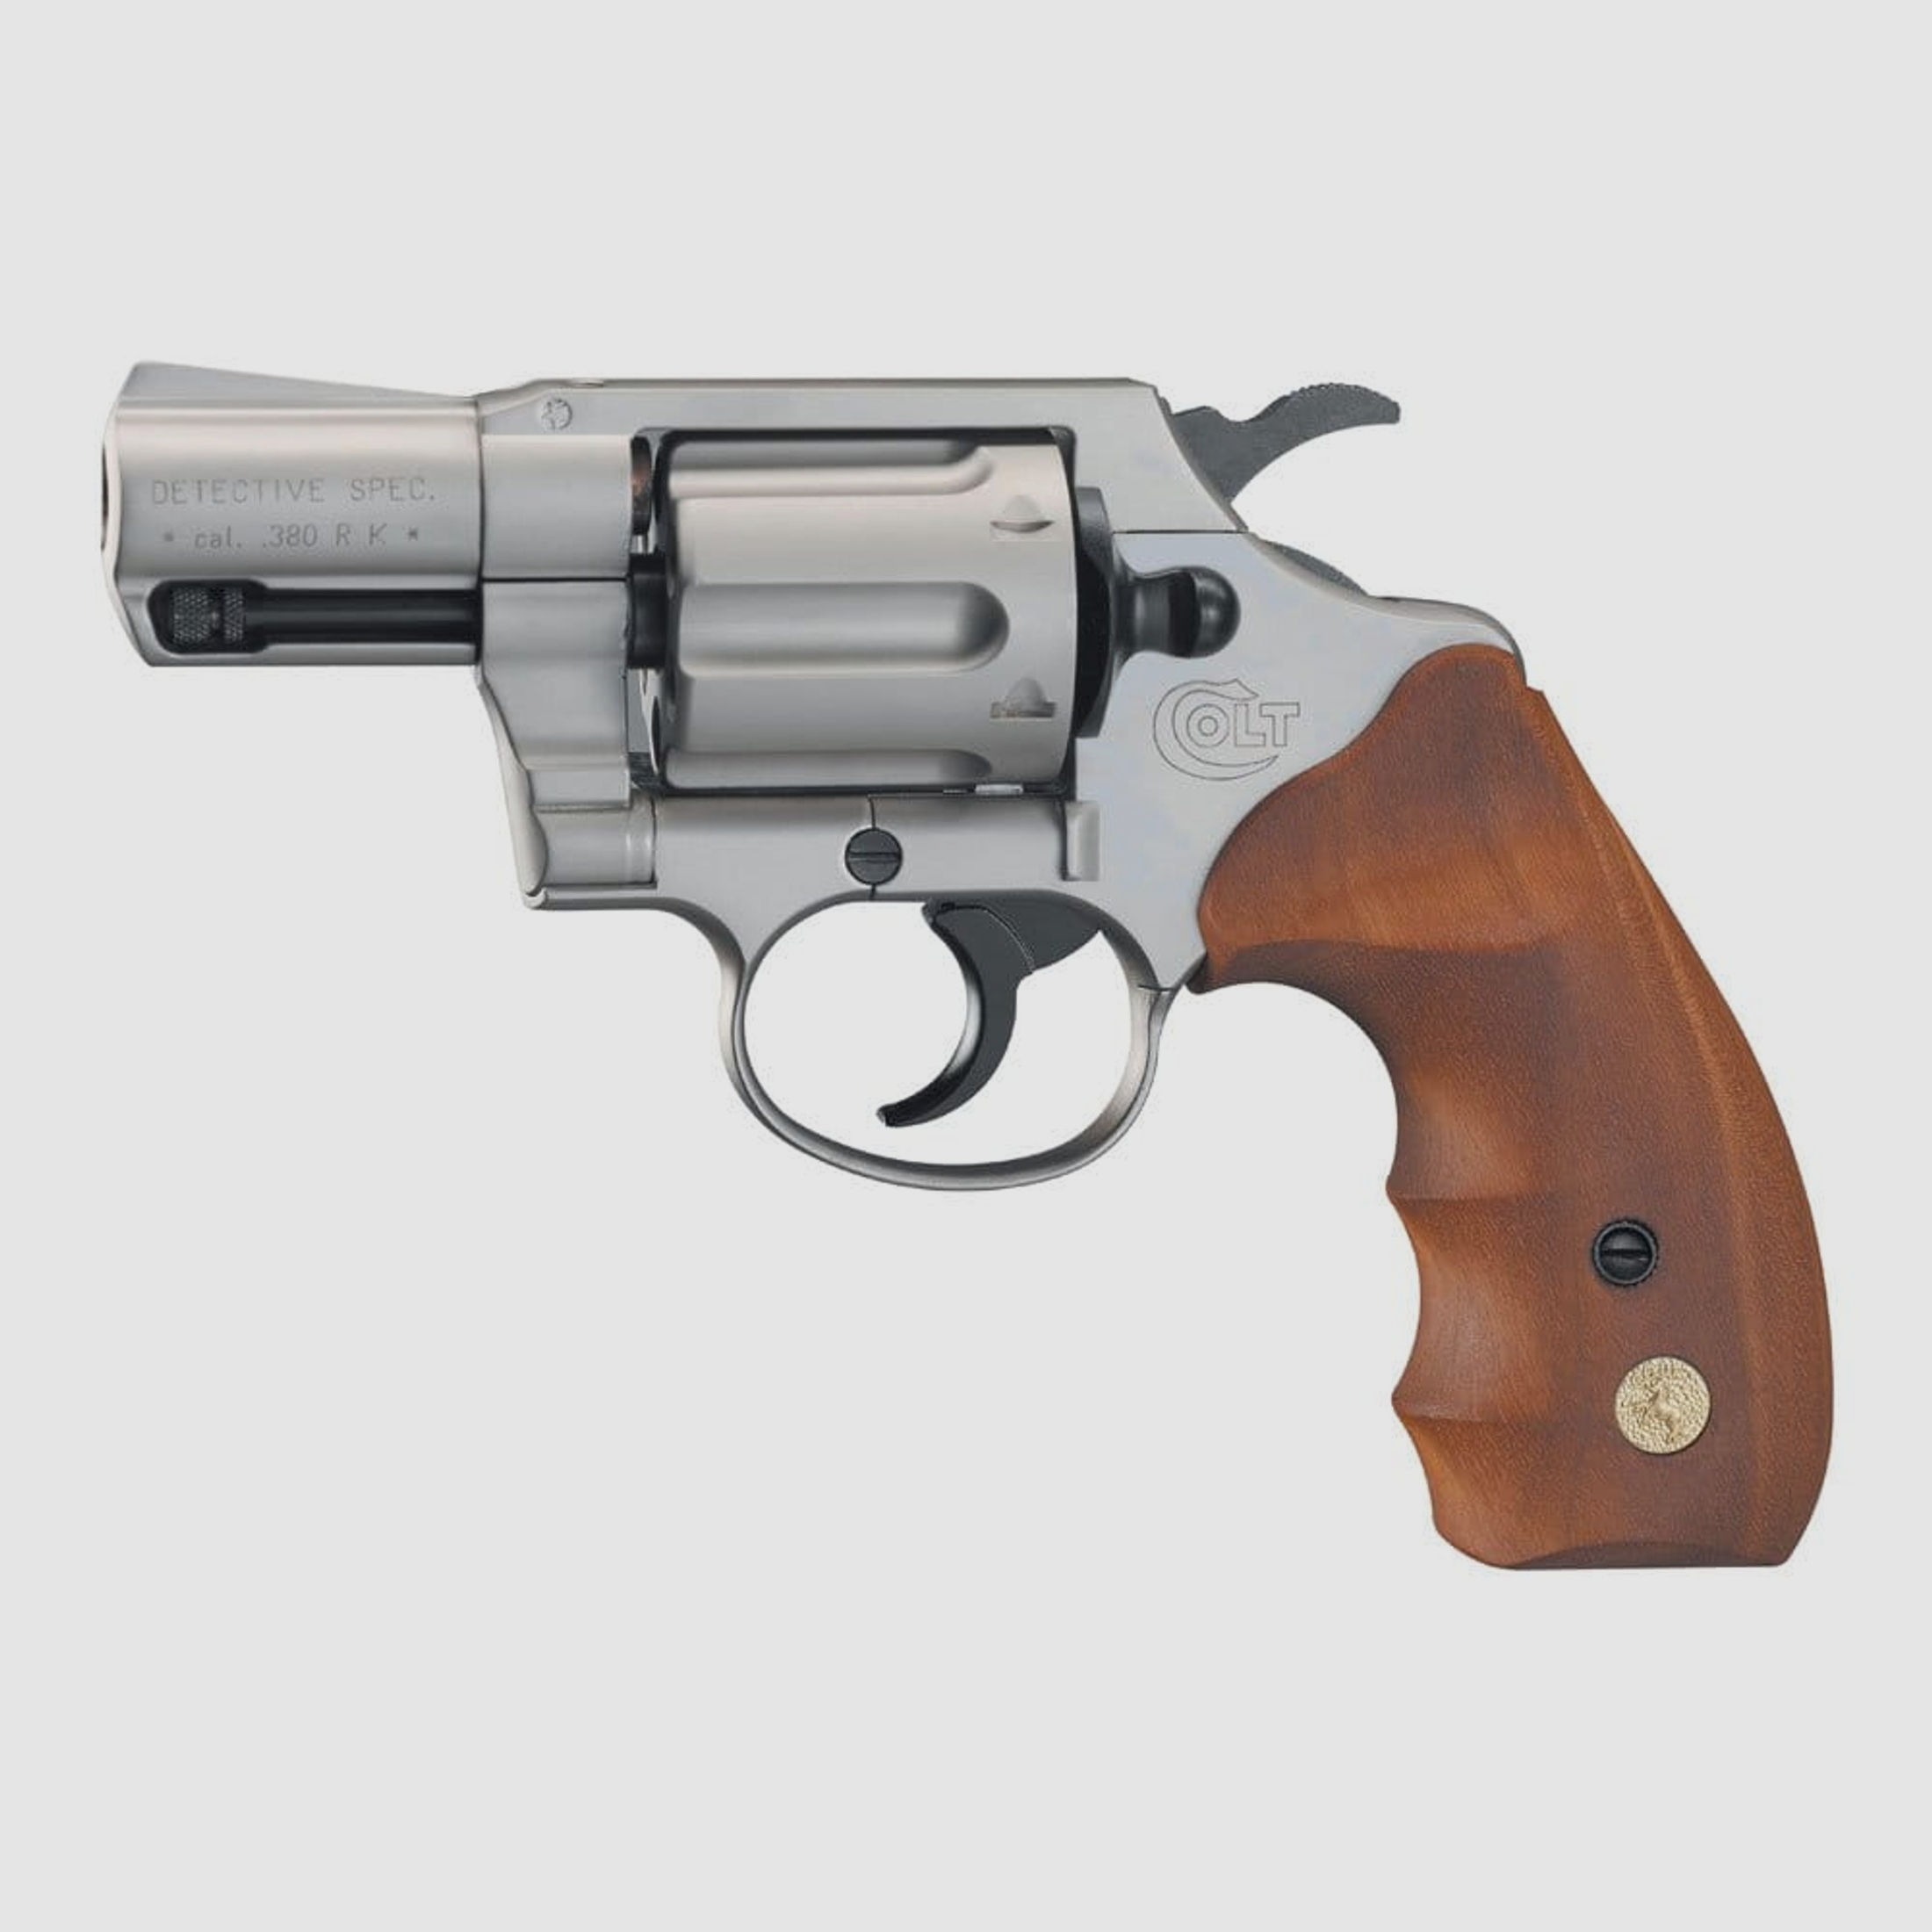 Colt Detective Special Schreckschuss Revolver 9 mm R.K. bicolor